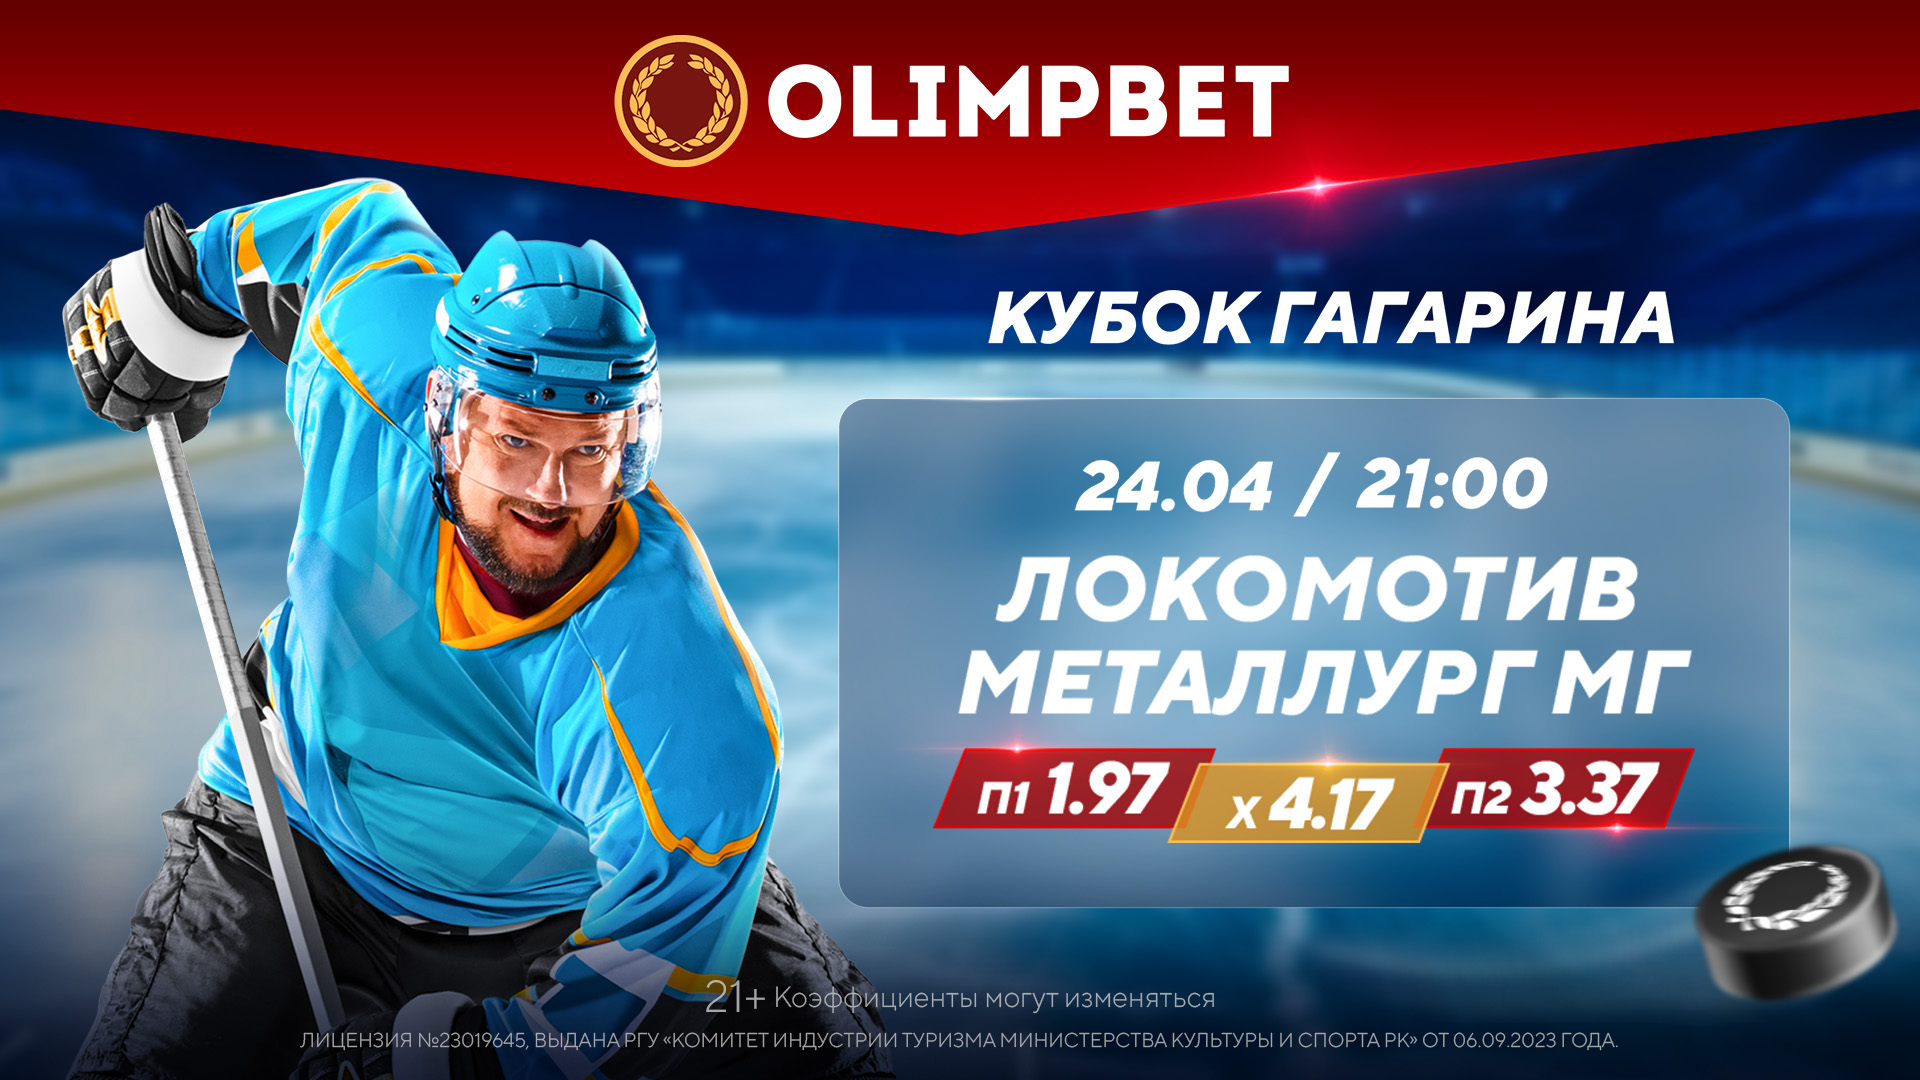 Четвертый матч между «Локомотивом» и «Металлургом» – в кэфах Olimpbet